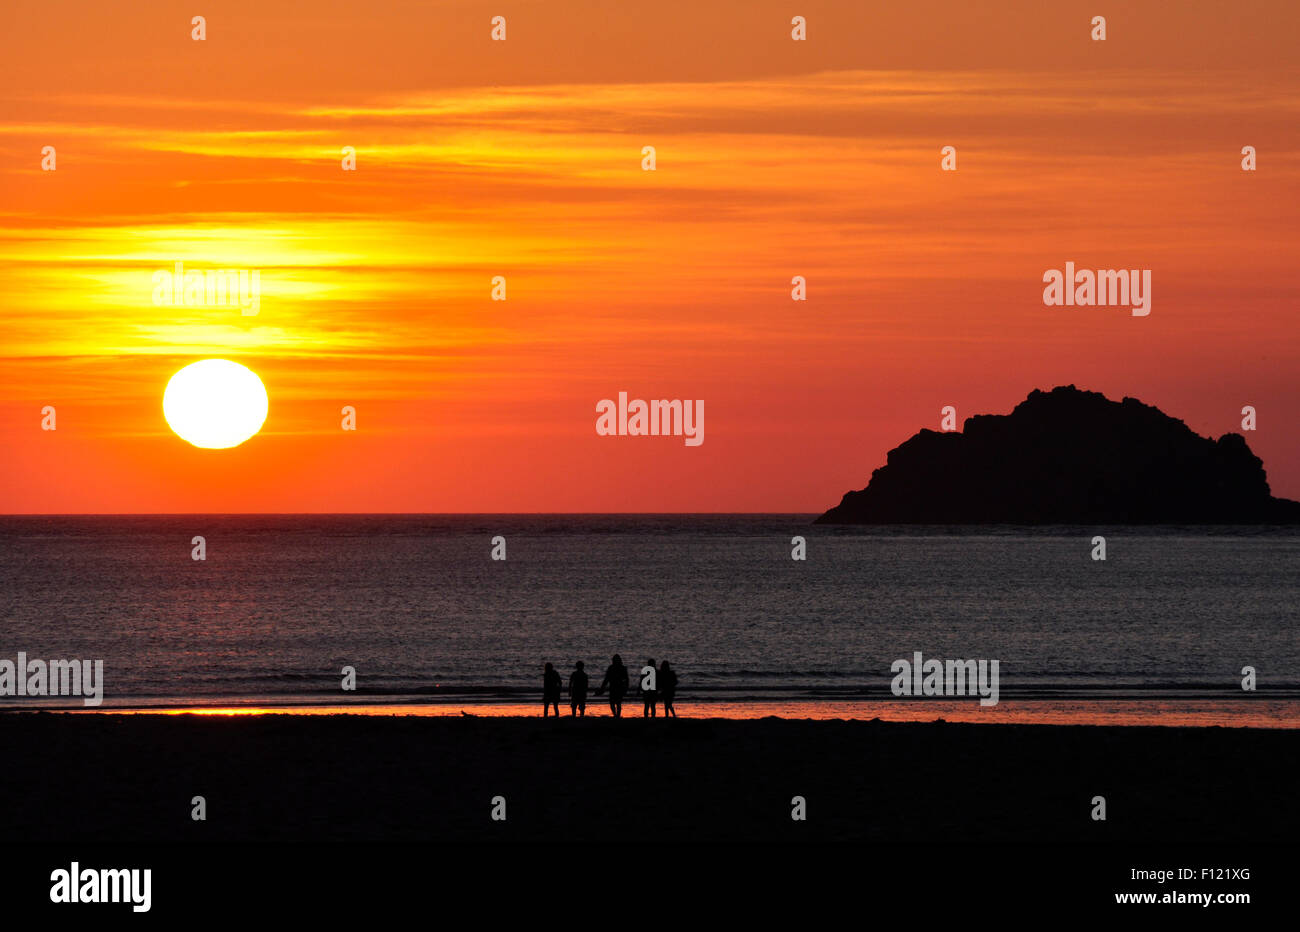 Cornouailles du nord - soleil sur plage - la mer en chiffres sombre silhouette - off shore island contours - orange - rouge - or sky Banque D'Images